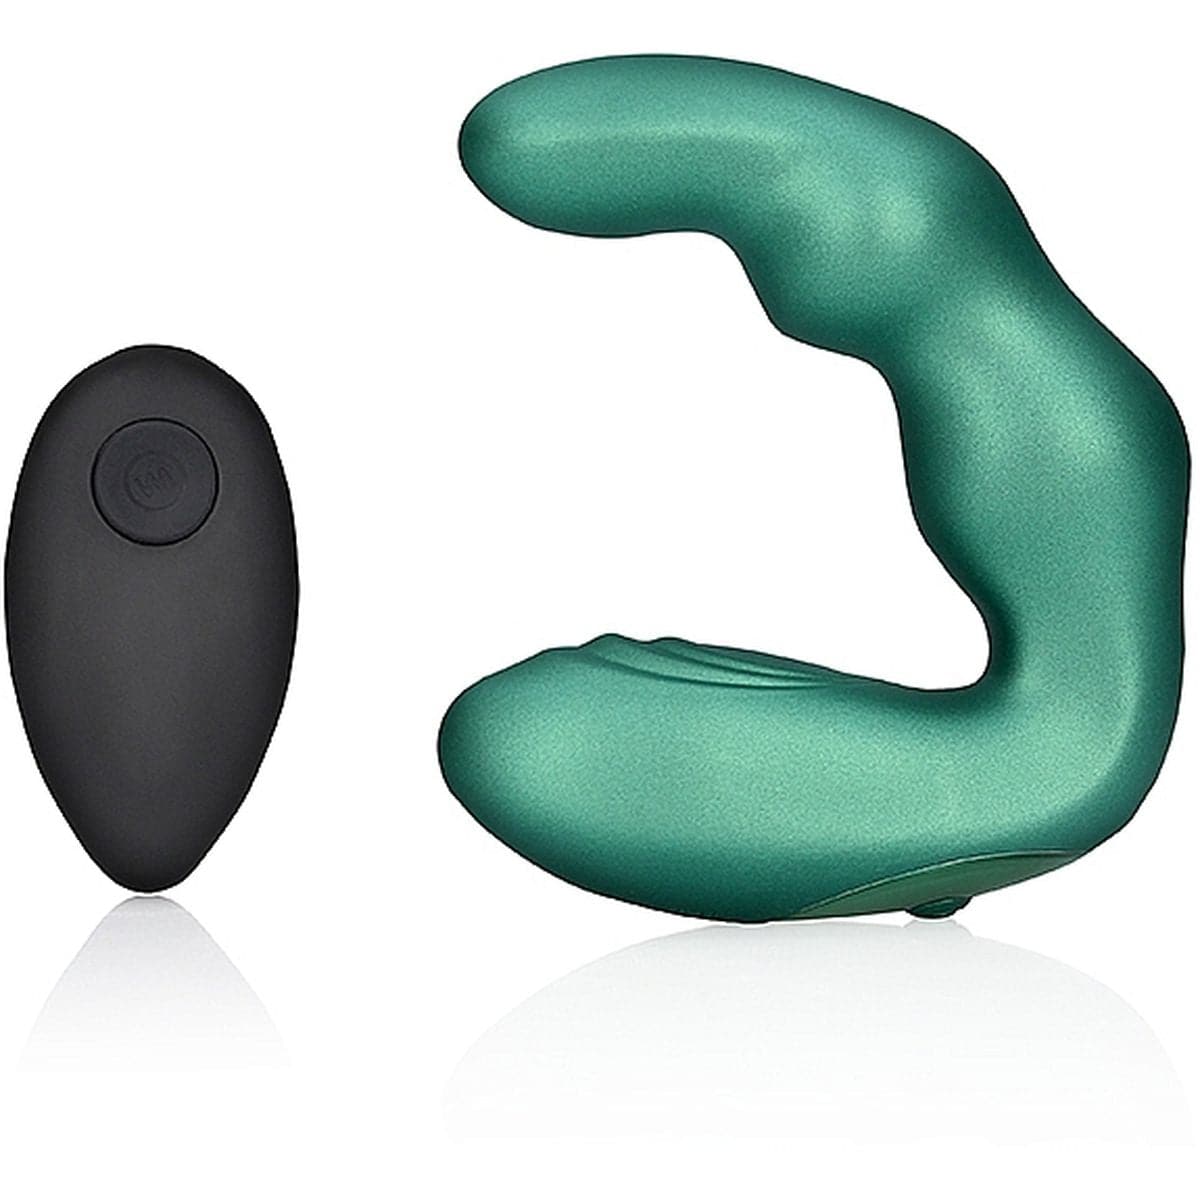 Estimulador Bent Verde USB com Controlo Remoto, 10vibrações - Pérola SexShop